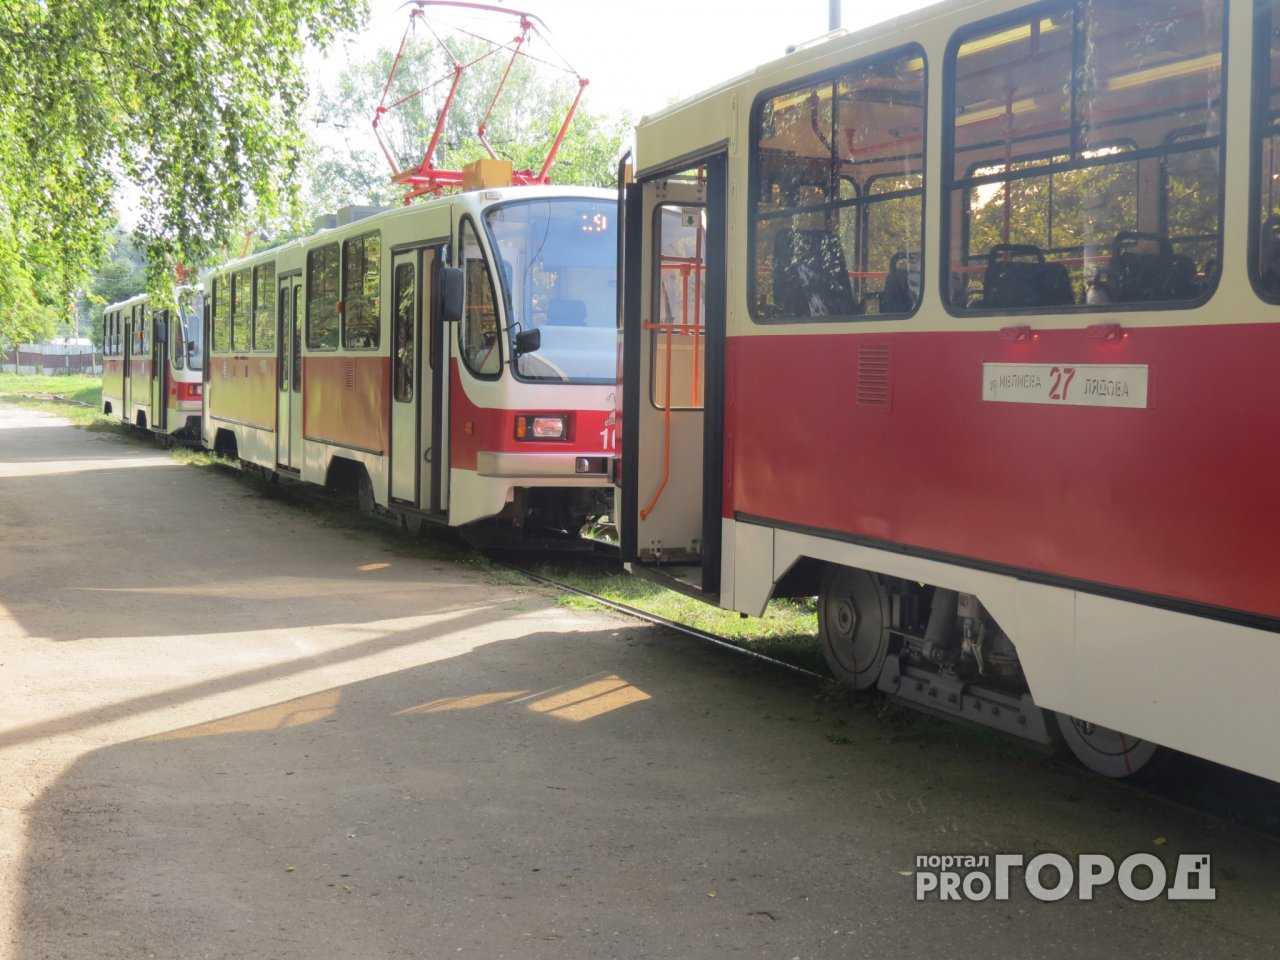 Трамваи №19 и 27 перестанут ходить по улице Надежды Сусловой до 1 июля